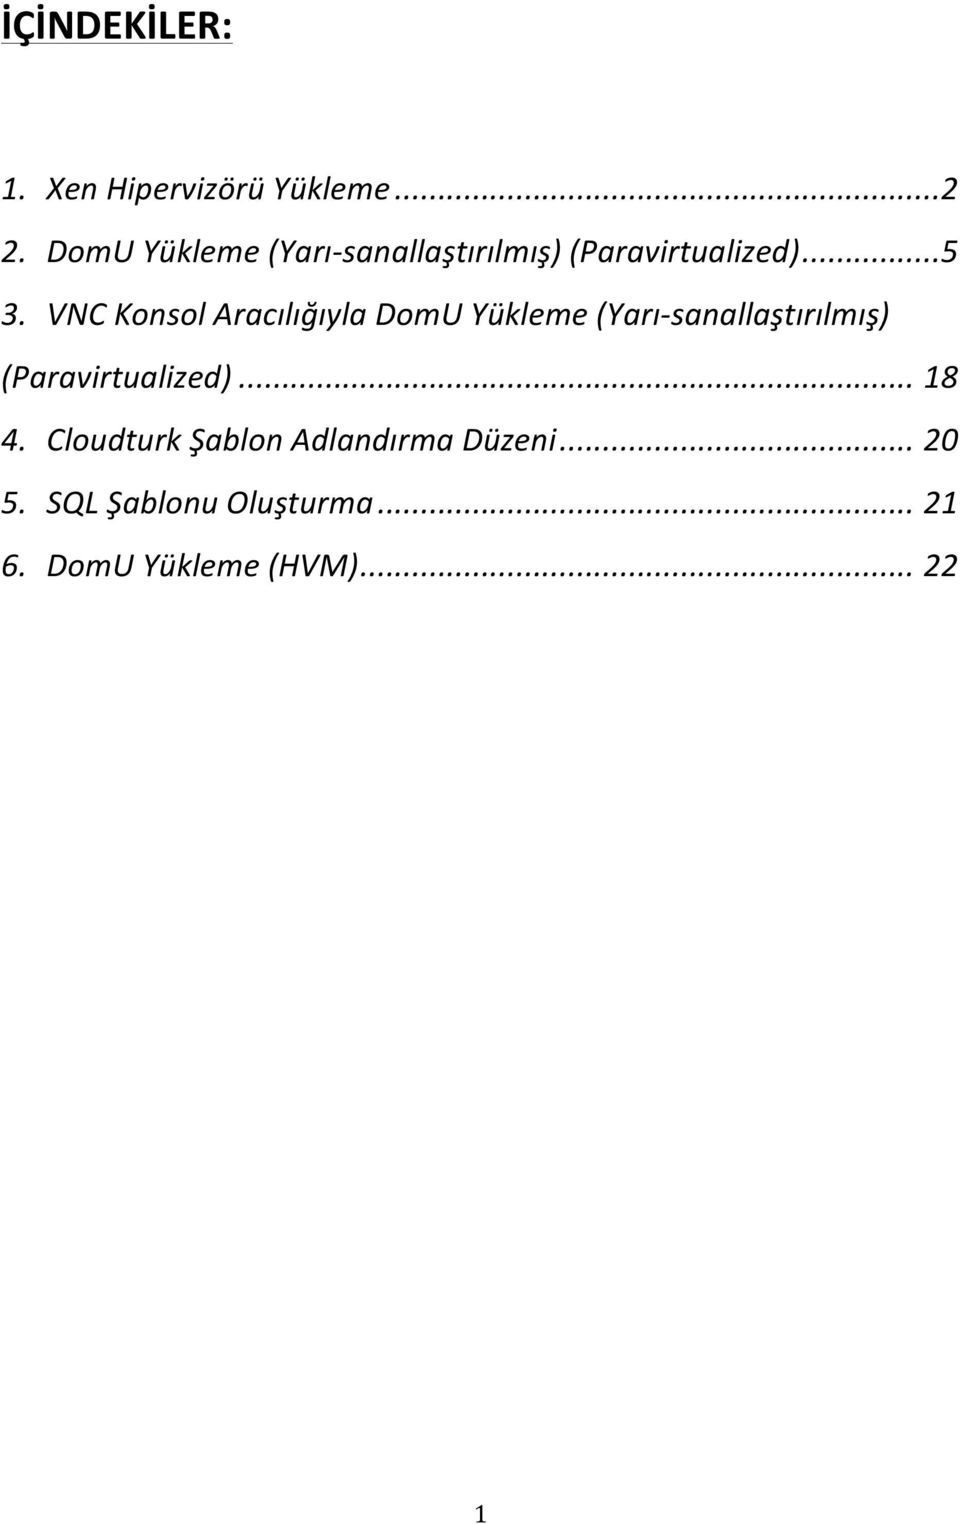 VNC Konsol Aracılığıyla DomU Yükleme (Yarı- sanallaştırılmış)